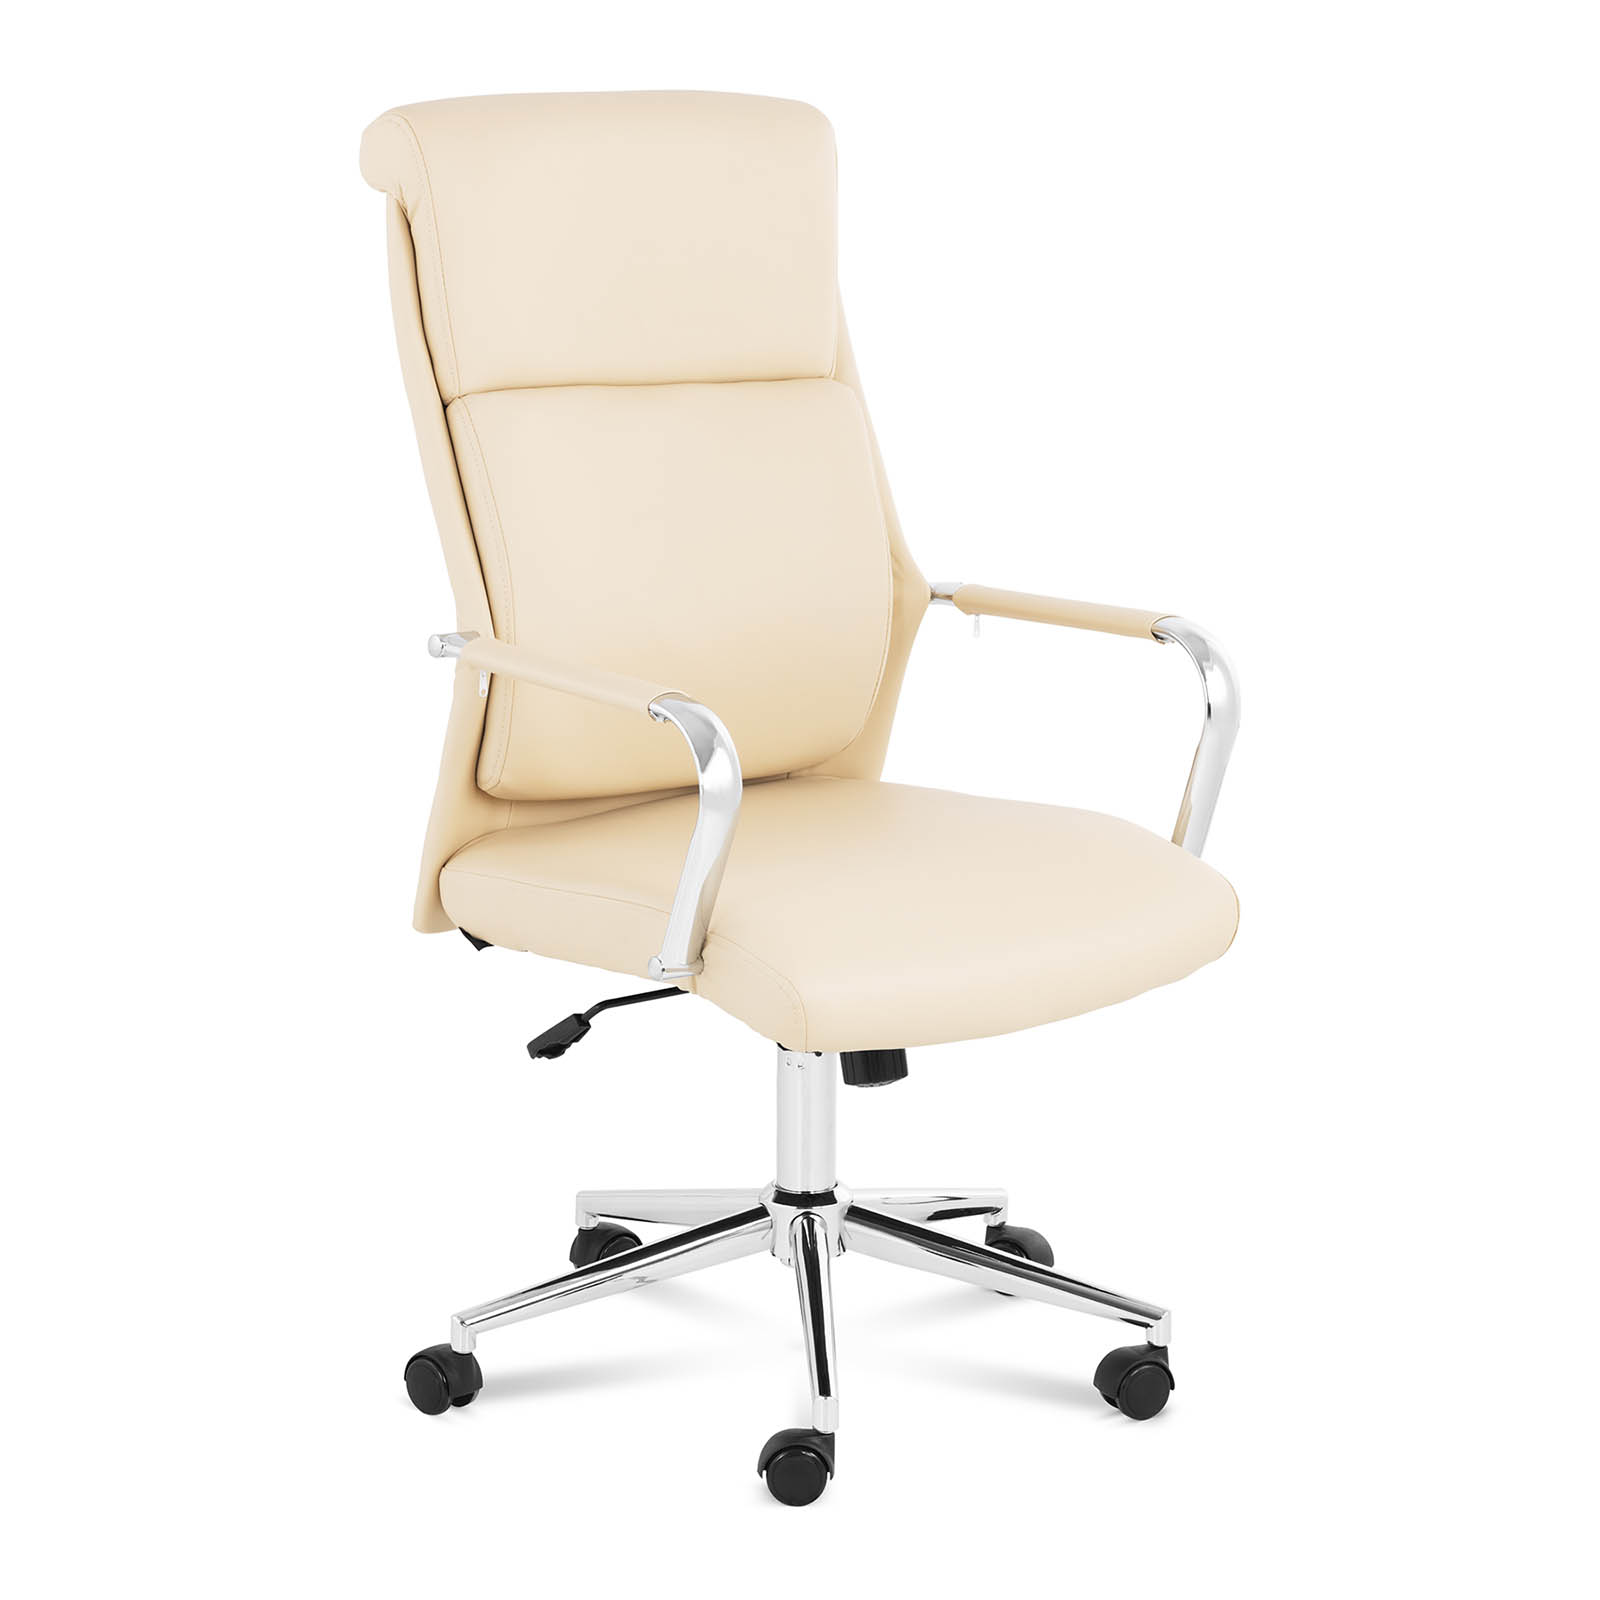 Office Chair - 180 kg - tan